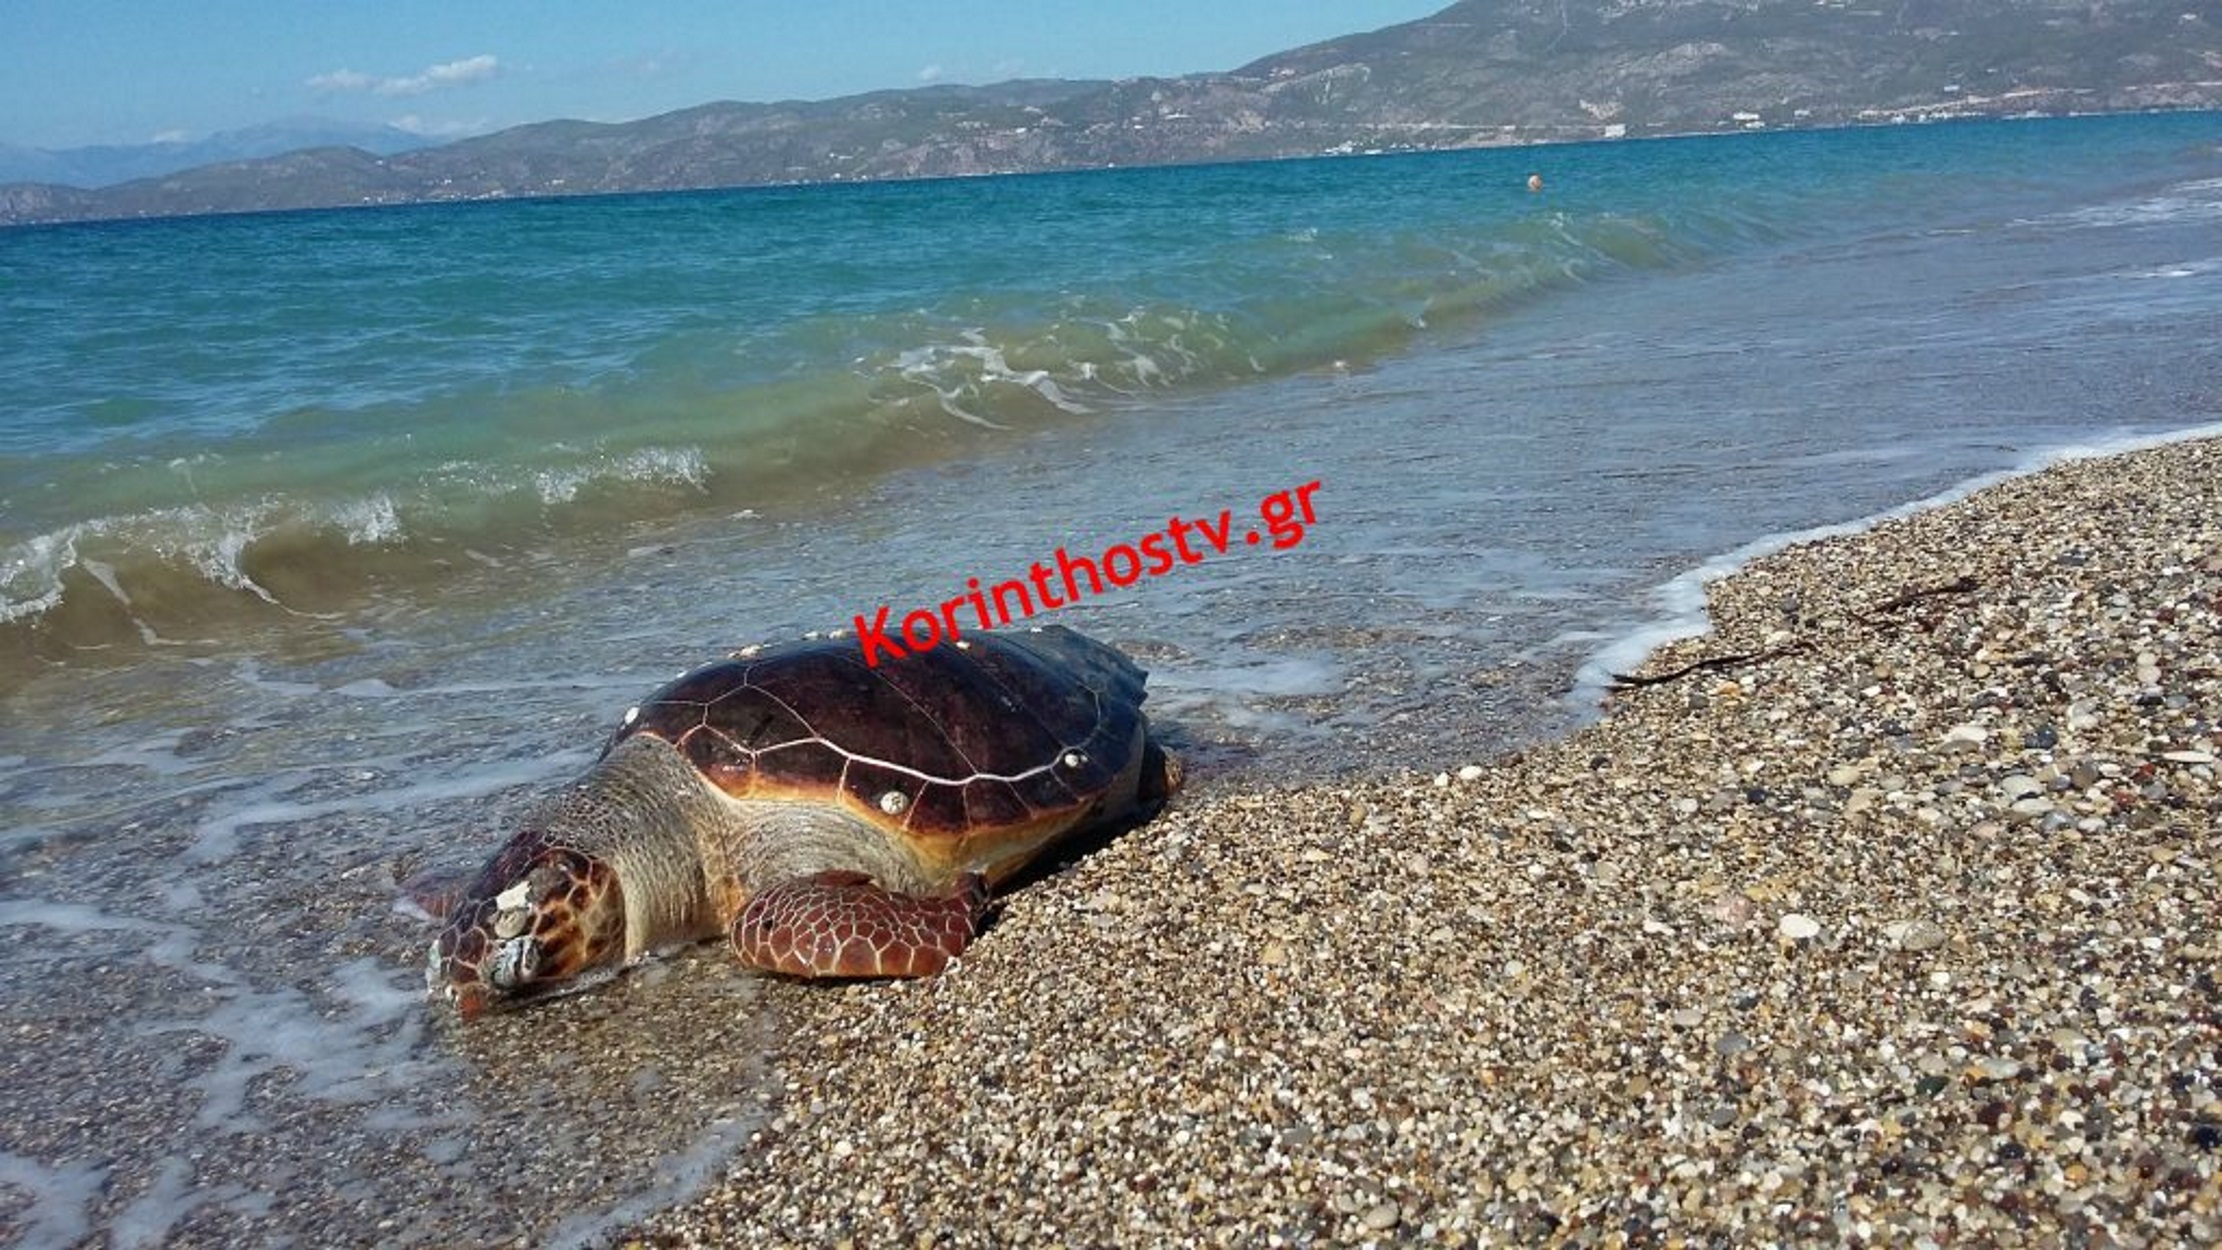 Κόρινθος: Κι άλλη χελώνα “καρέτα καρέτα” βρέθηκε νεκρή στην παραλία! video